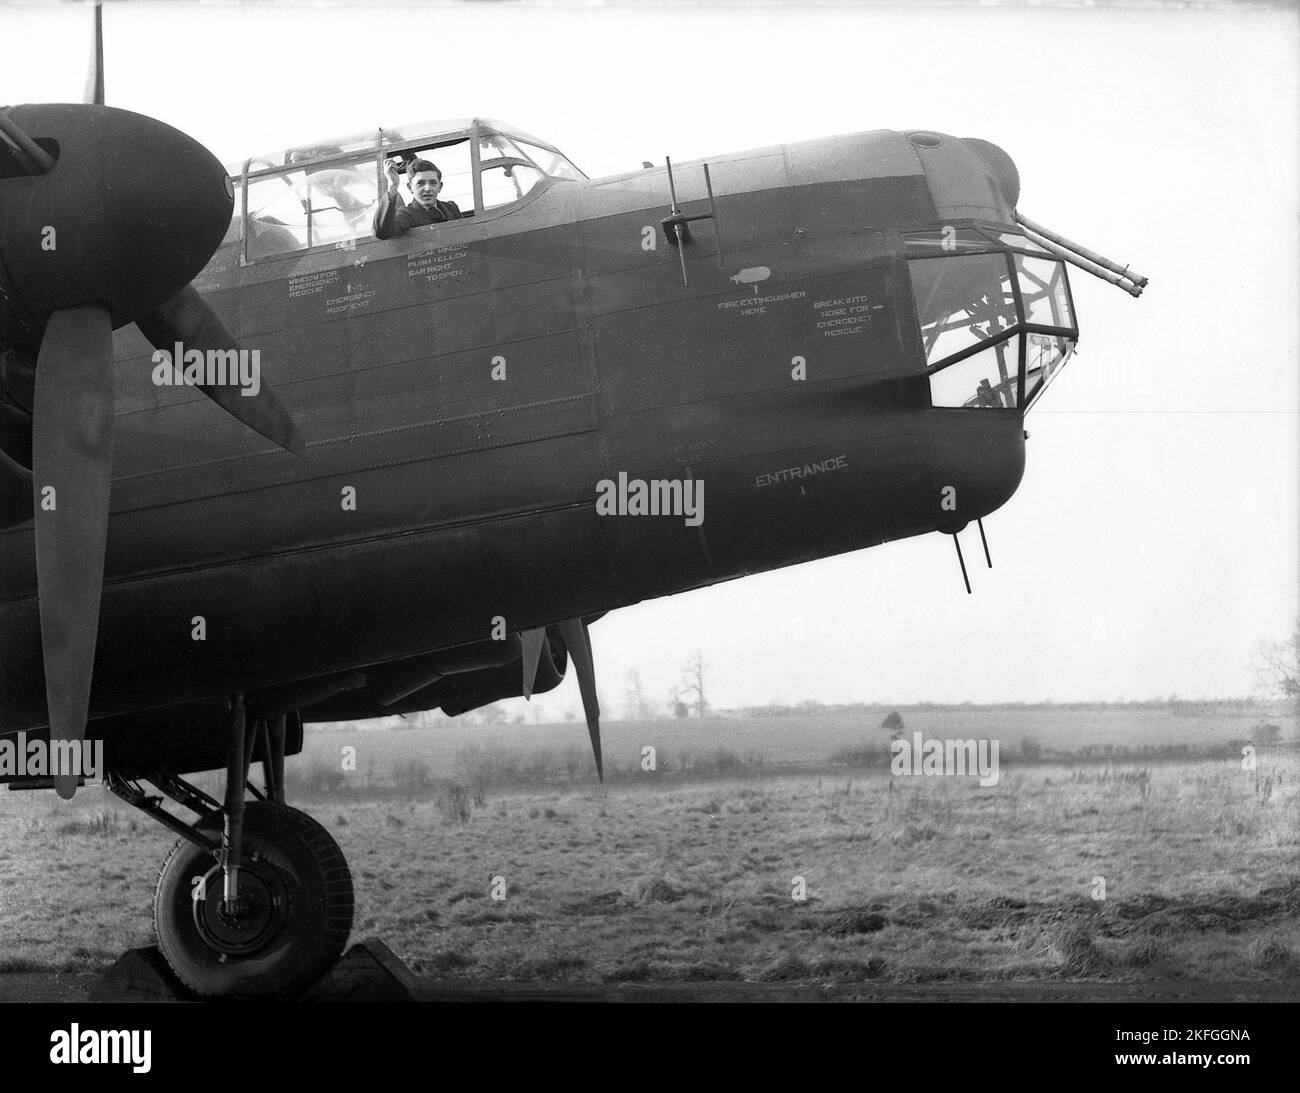 1948, historique, un pilote de la RAF qui agite depuis le poste de pilotage d'un bombardier Avro Lancaster s'assit sur un terrain à la RAF Ternhill, Longford Camp, Market Drayton, Angleterre, Royaume-Uni. Conçu par Roy Chadwick, le Lancaster était un bombardier lourd de WW2 fabriqué par Avro (A.V. ROE and Company), un fabricant britannique fondé en 1910 à Manchester, dans le Lancashire, en Angleterre, au Royaume-Uni. Le prototype du Lancaster a effectué son vol inaugural en janvier 1941. L'avion avait un équipage de sept hommes, dont l'âge moyen n'était que de 22 ans. Banque D'Images